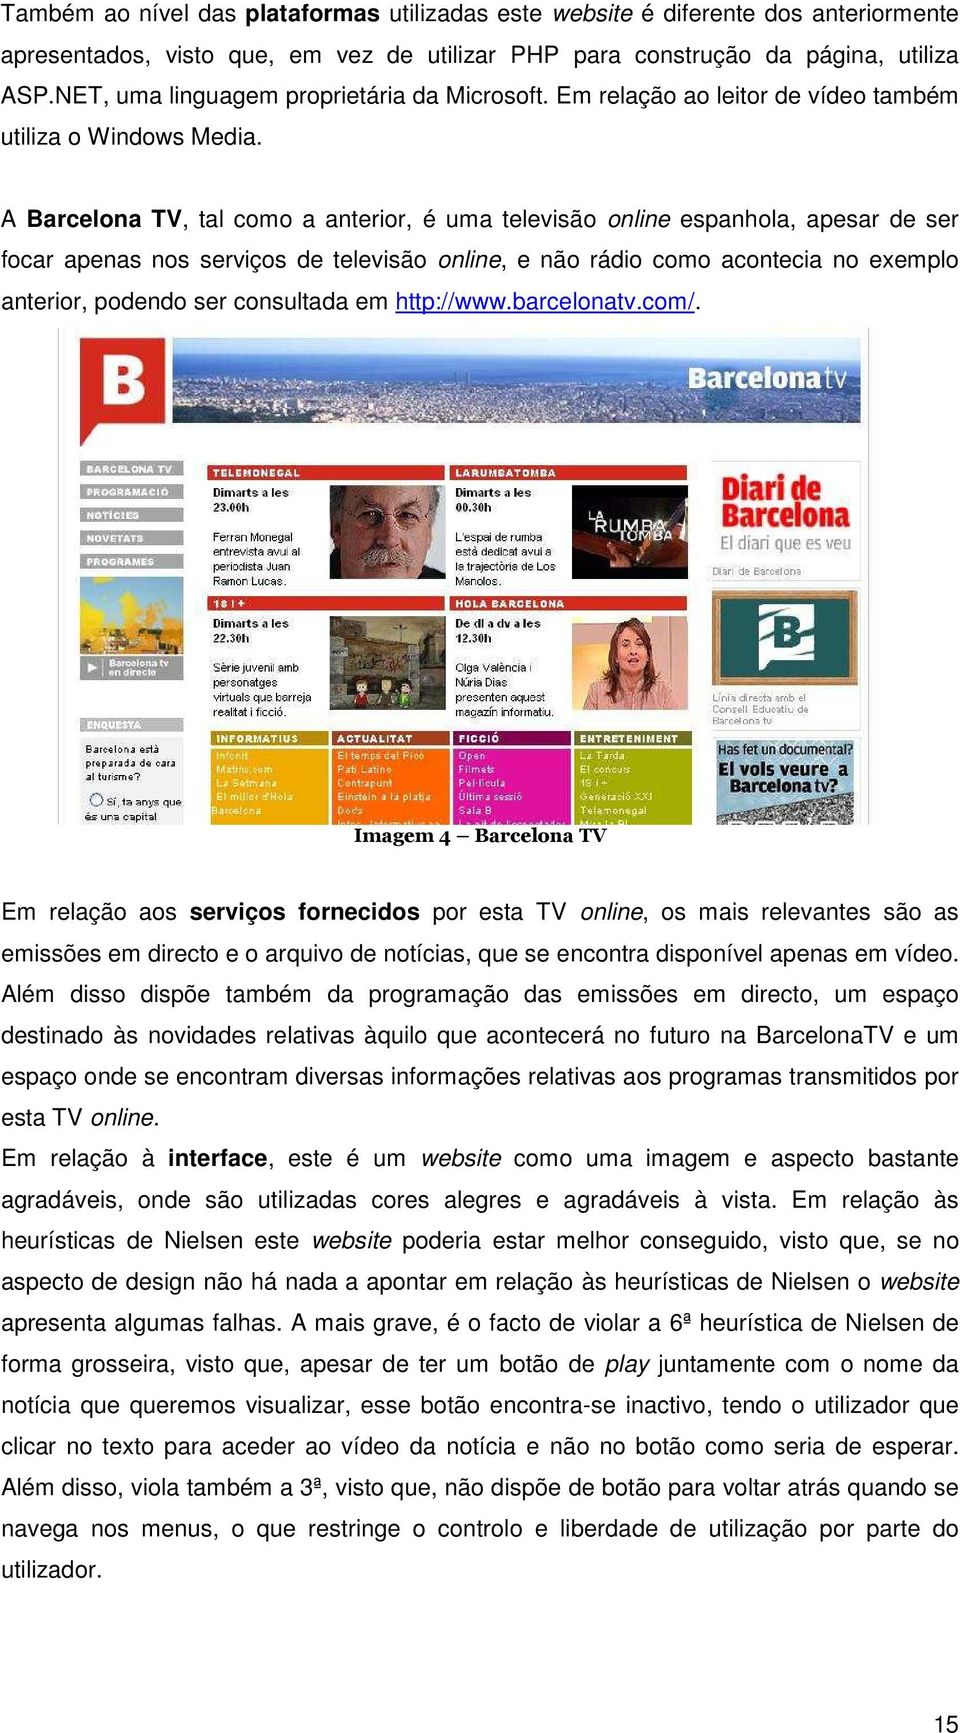 A Barcelona TV, tal como a anterior, é uma televisão online espanhola, apesar de ser focar apenas nos serviços de televisão online, e não rádio como acontecia no exemplo anterior, podendo ser